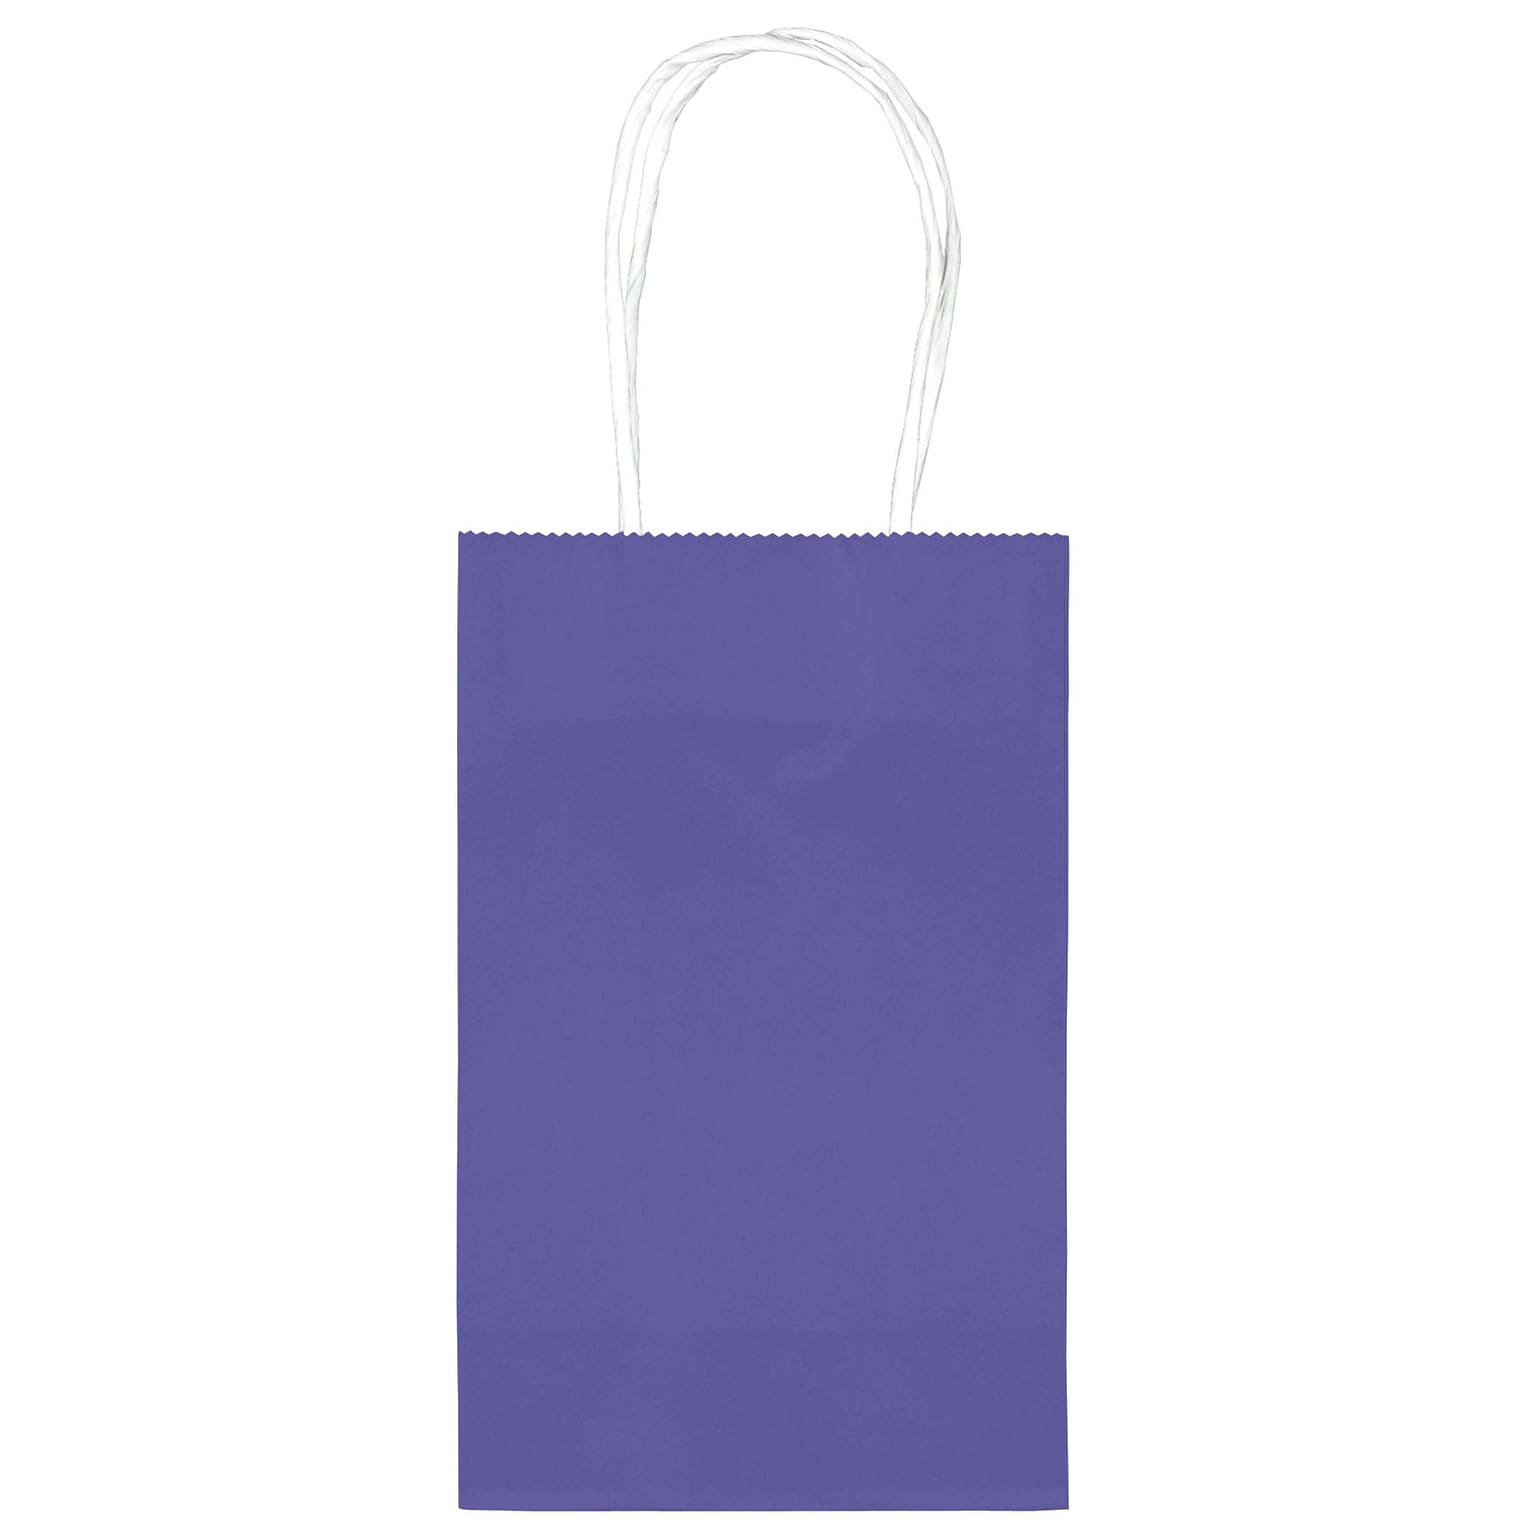 Amscan Kraft Paper Bag, 8.25 x 5.25, New Purple, 4/Pack, 10 Bags/Pack (162500.106)